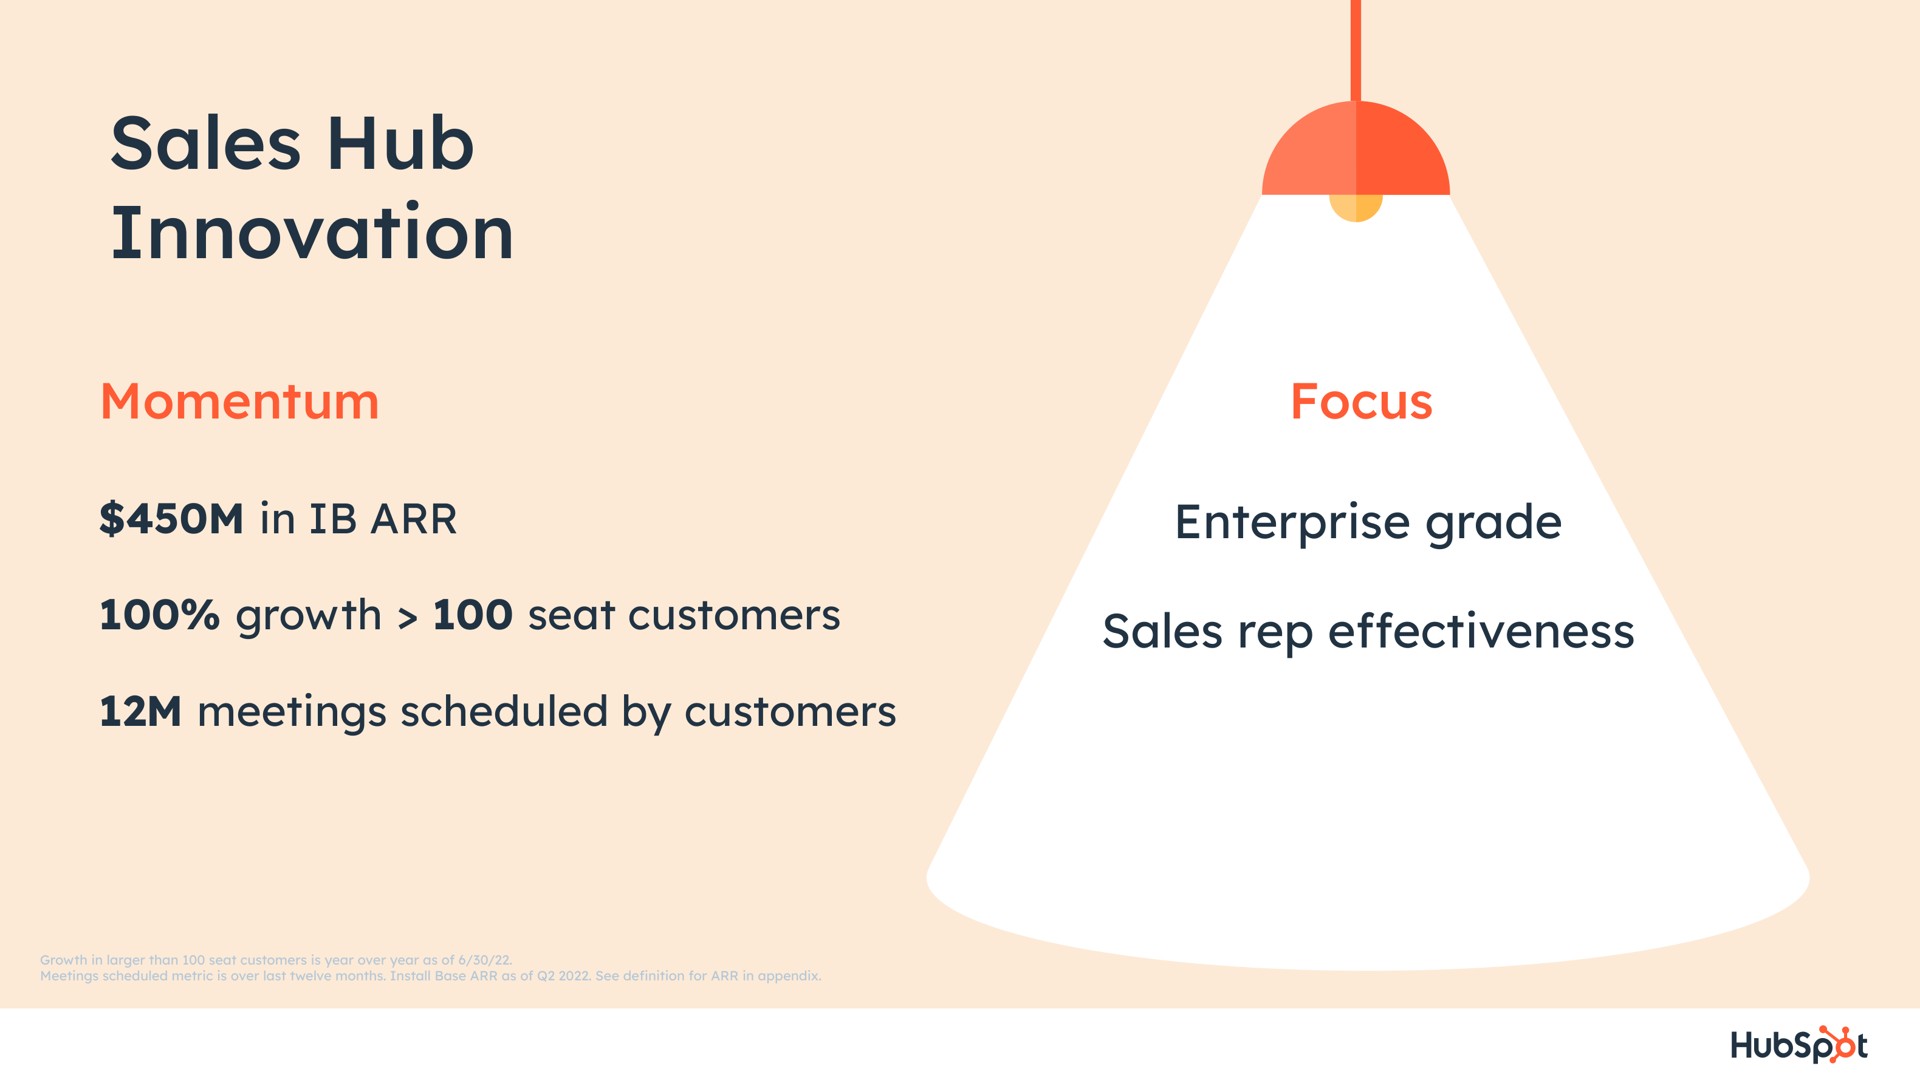 sales hub innovation in enterprise grade rep effectiveness | Hubspot